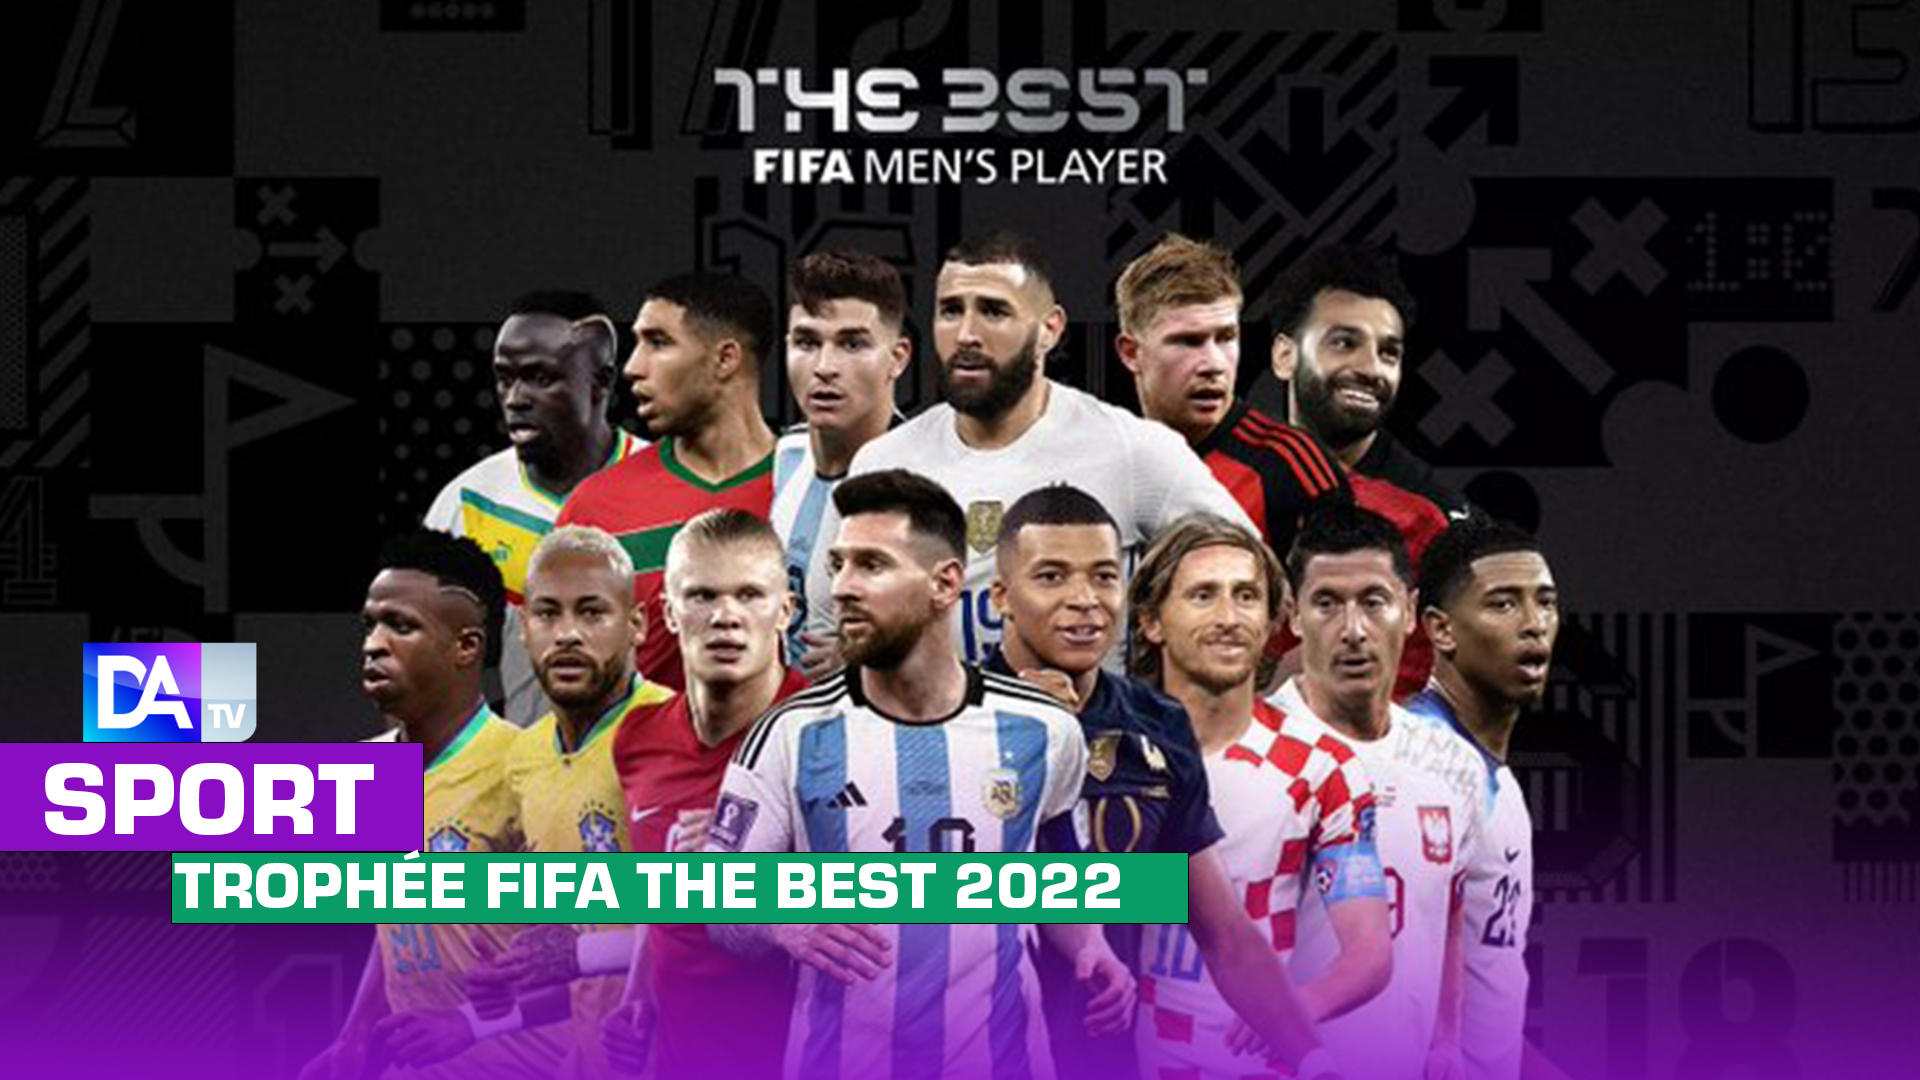 Trophée FIFA THE BEST 2022 : Le top 14 des nominés dévoilé avec Sadio Mané, Messi et Mbappé…